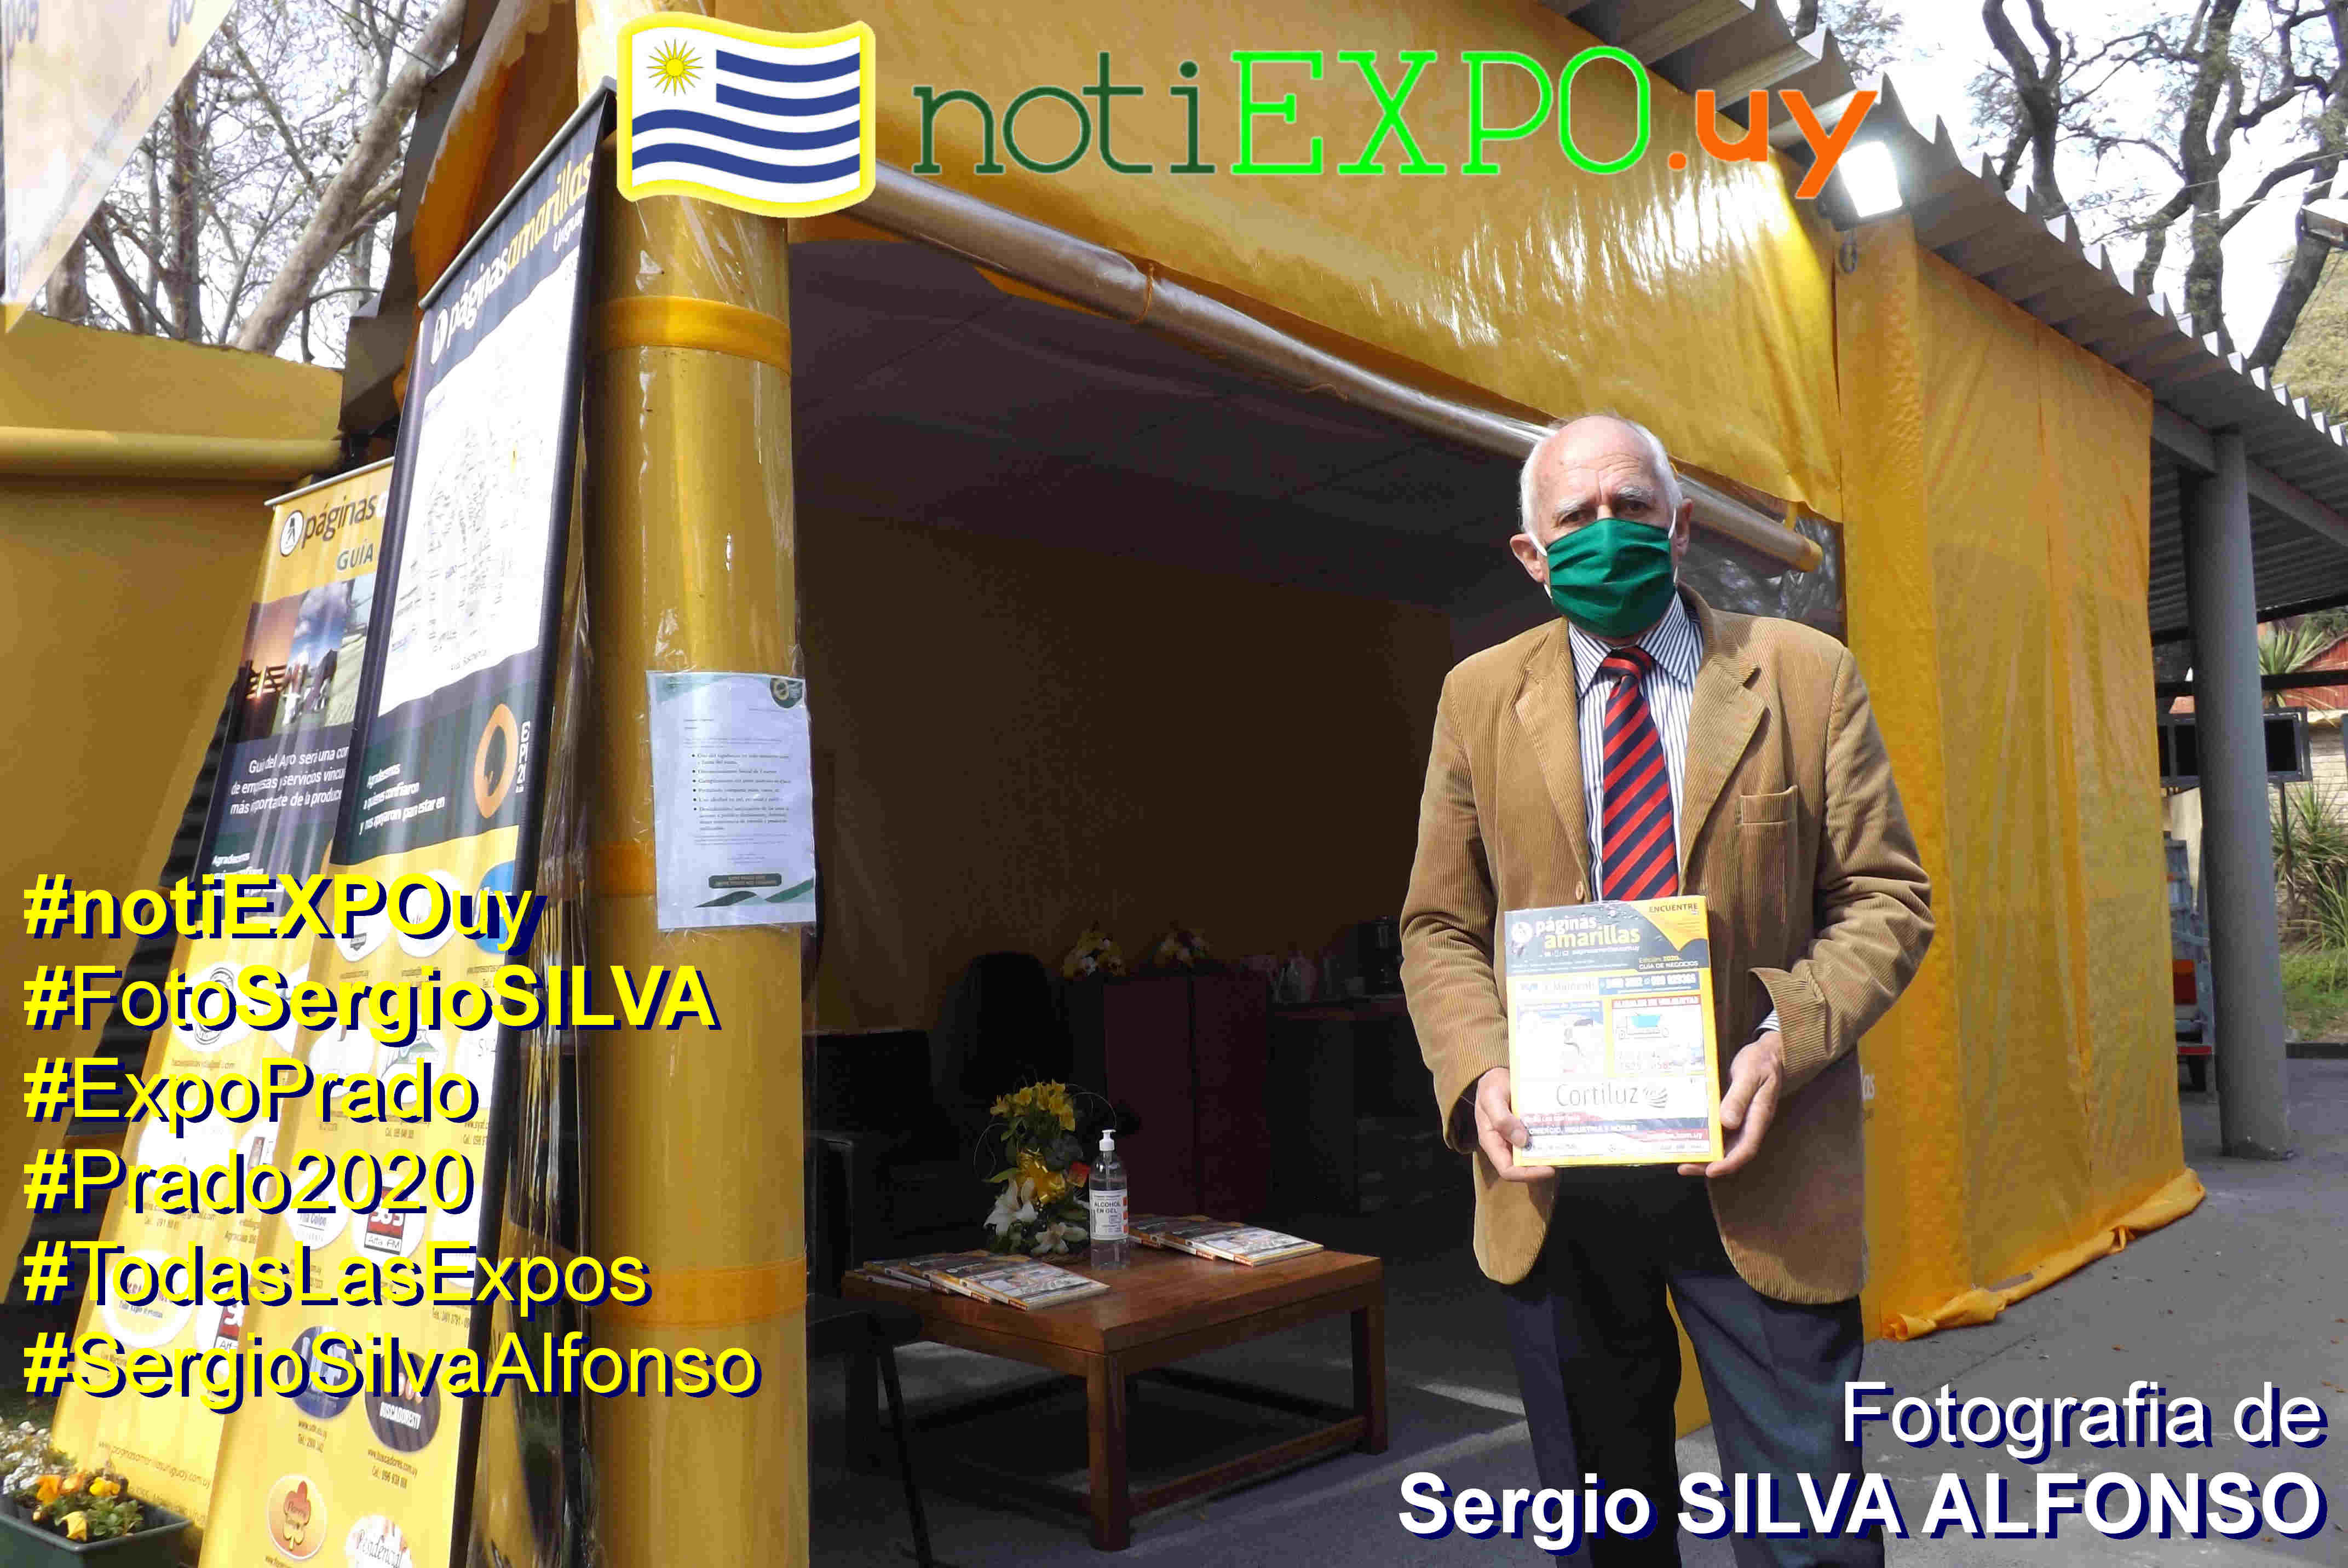 Antonio Tormo - Paginas Amarillas en la Expo Prado 2020. Foto Sergio SILVA ALFONSO. #SergioSilvaAlfonso